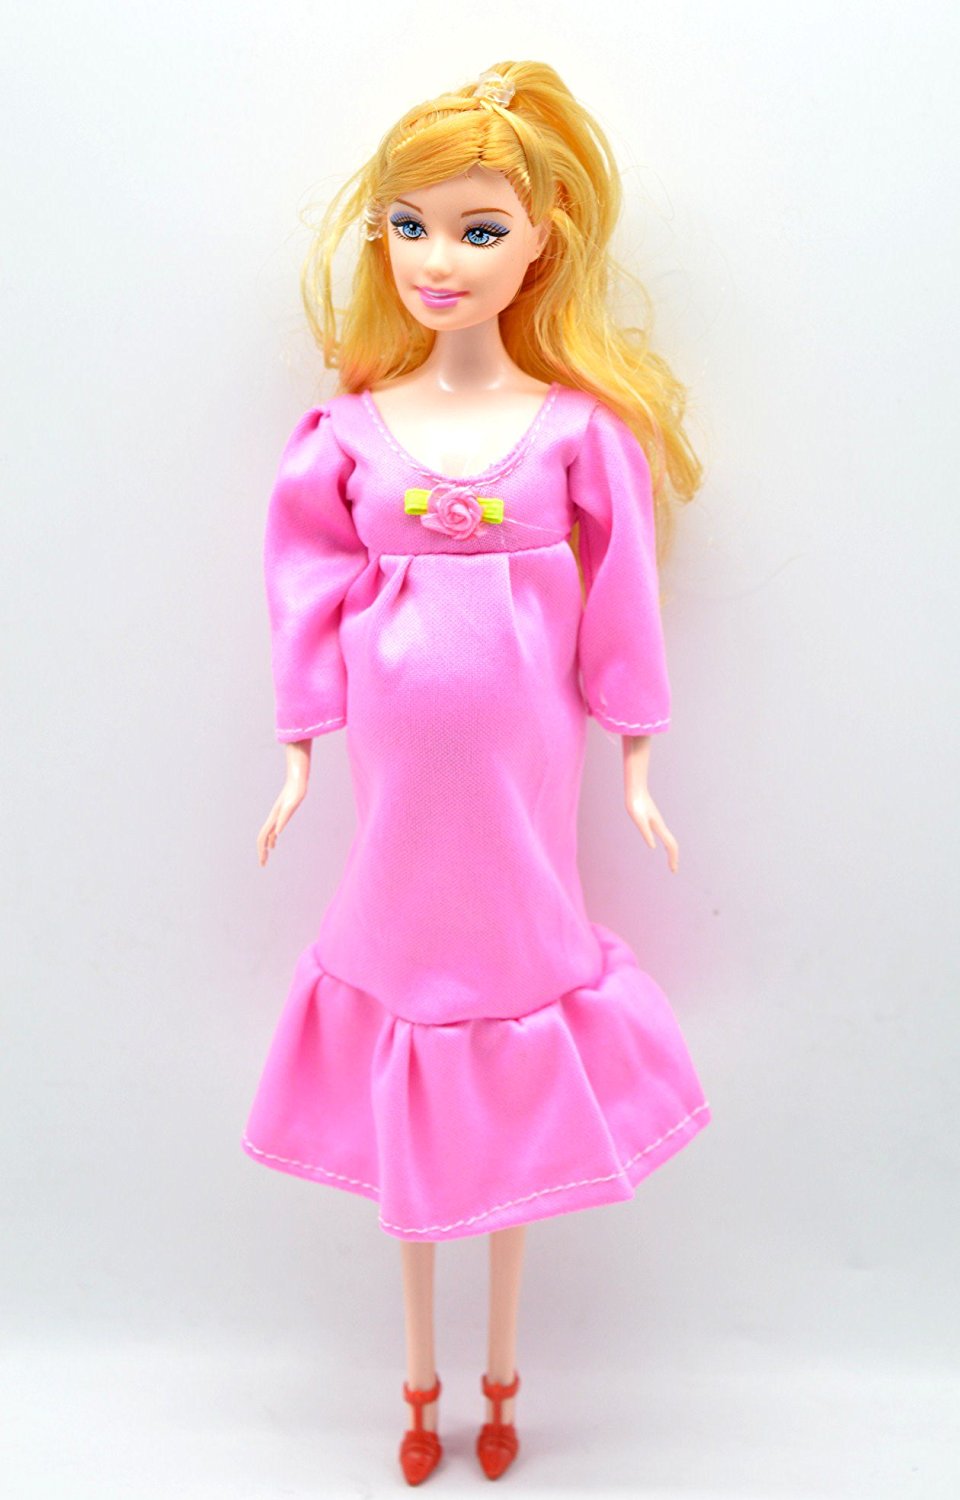 Барби – роженица: в Китае продают куклу с младенцем в животике